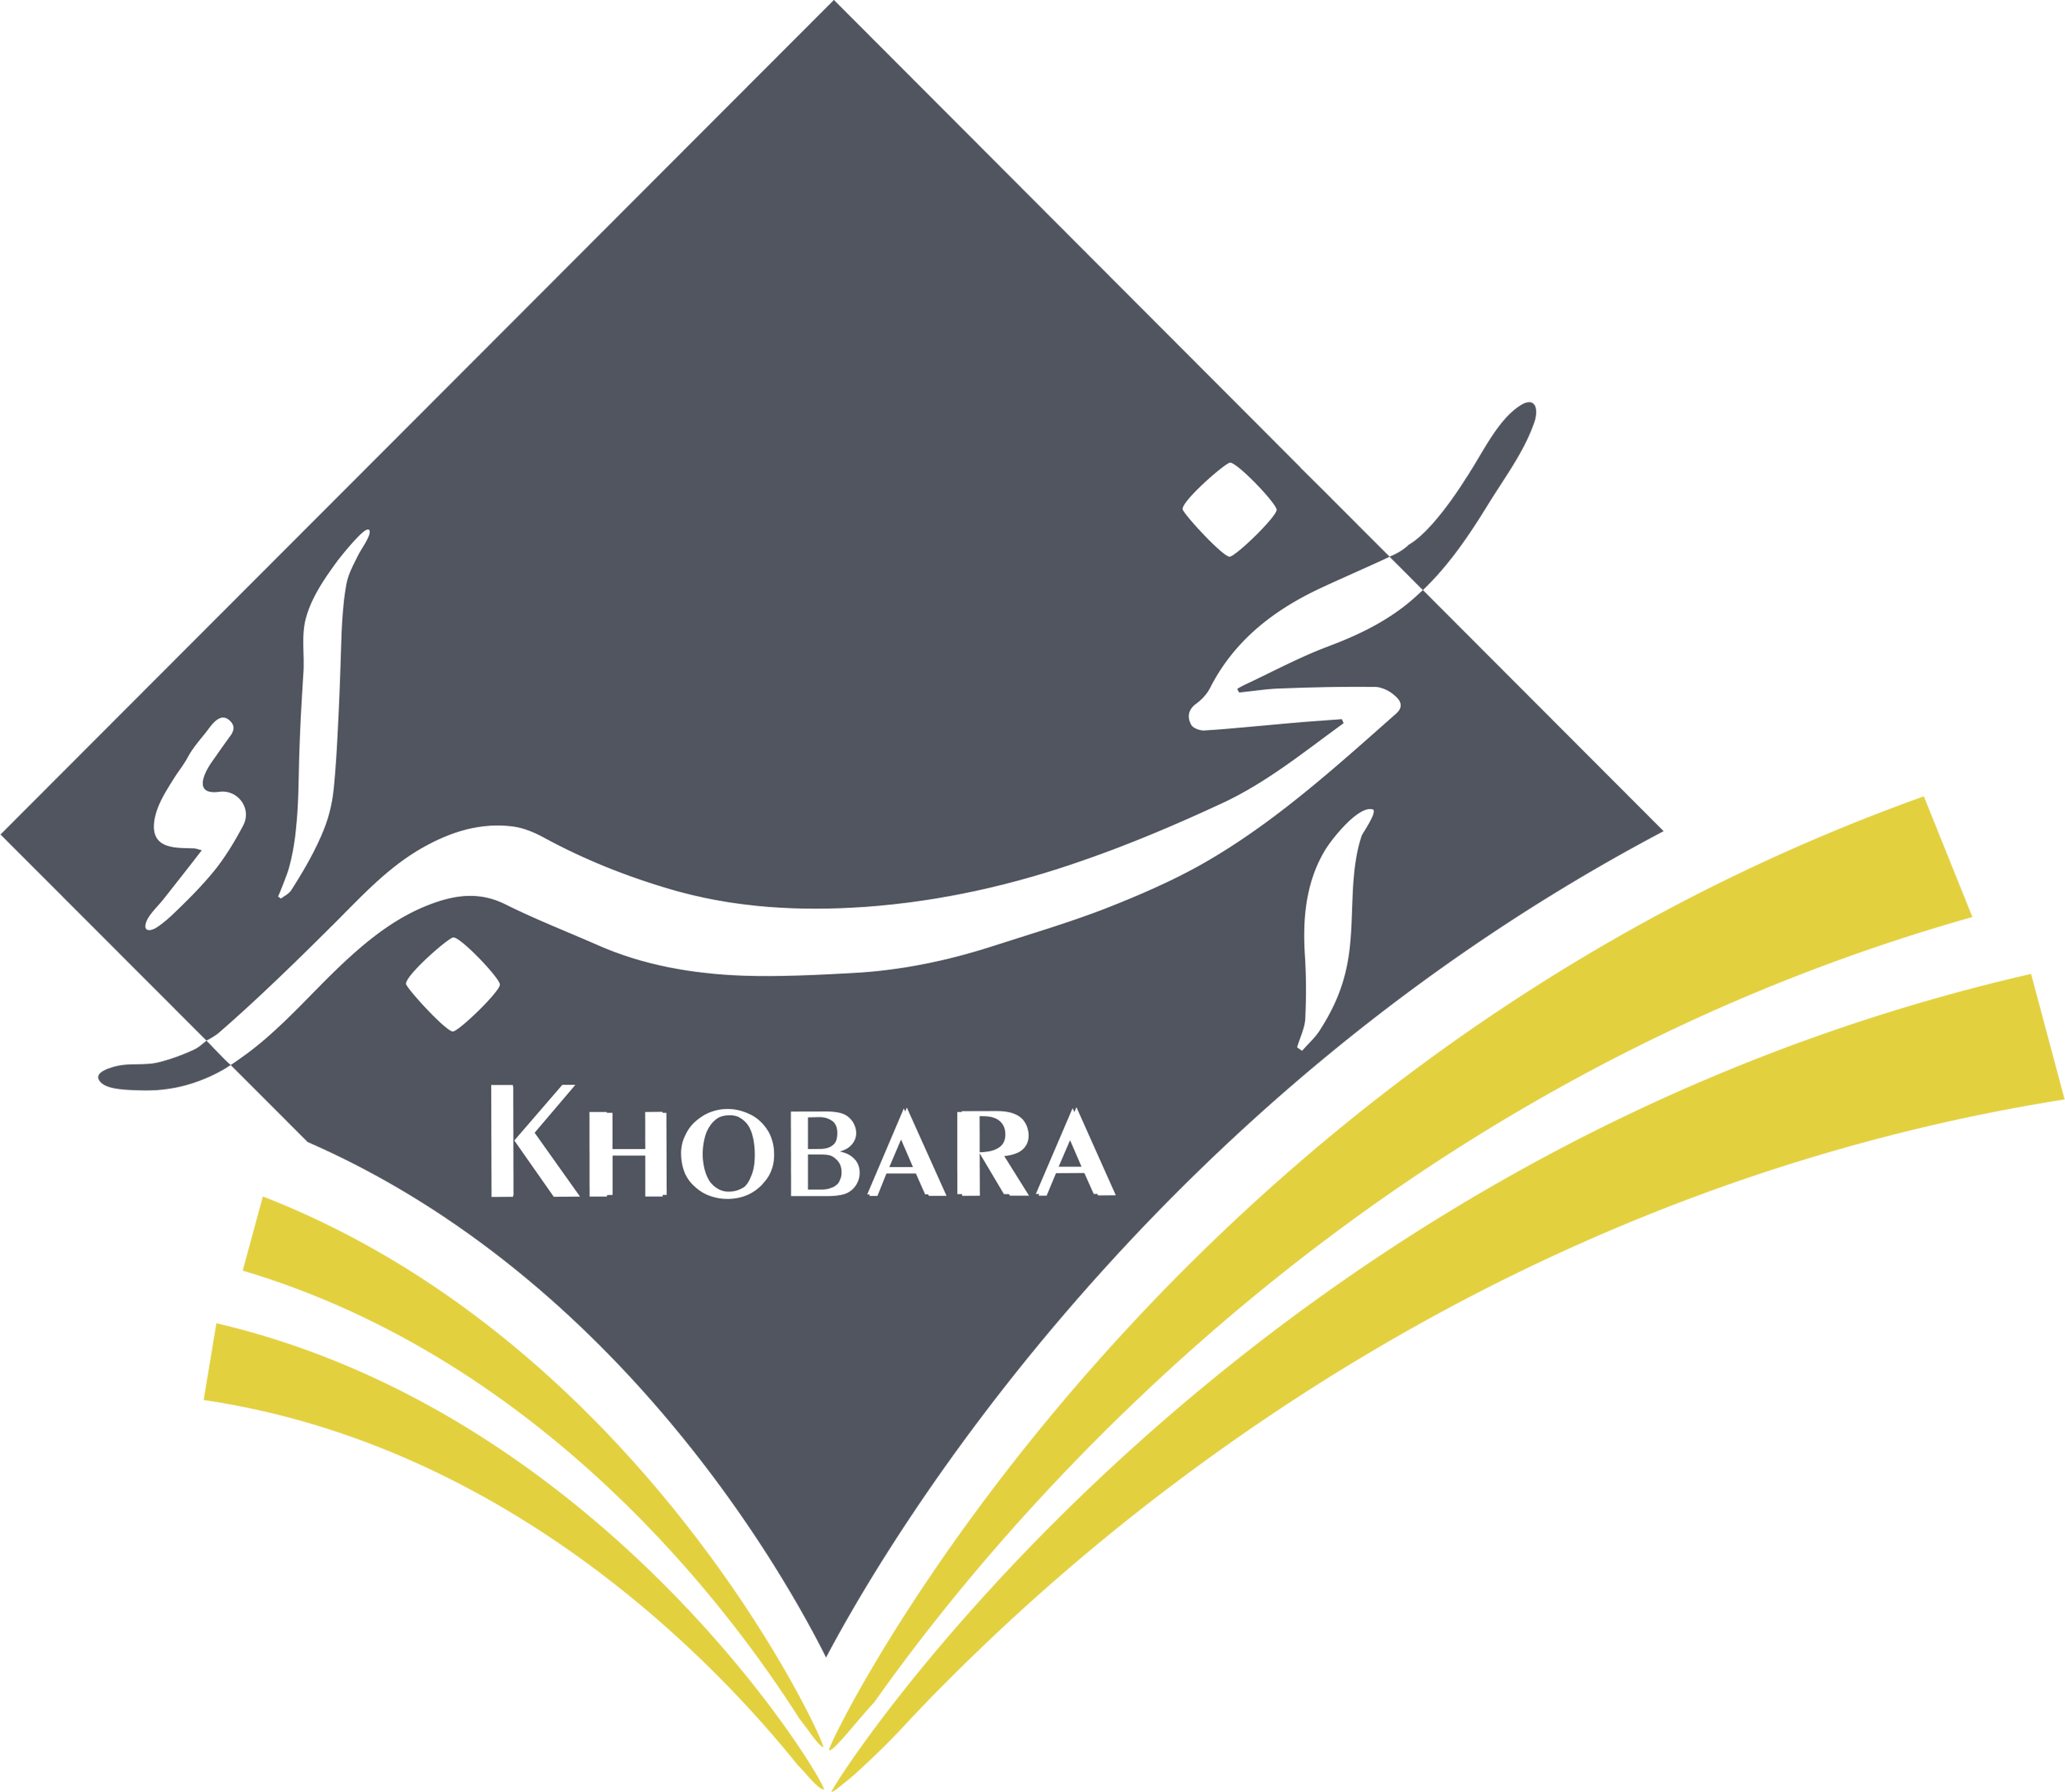  Alkhobra logo